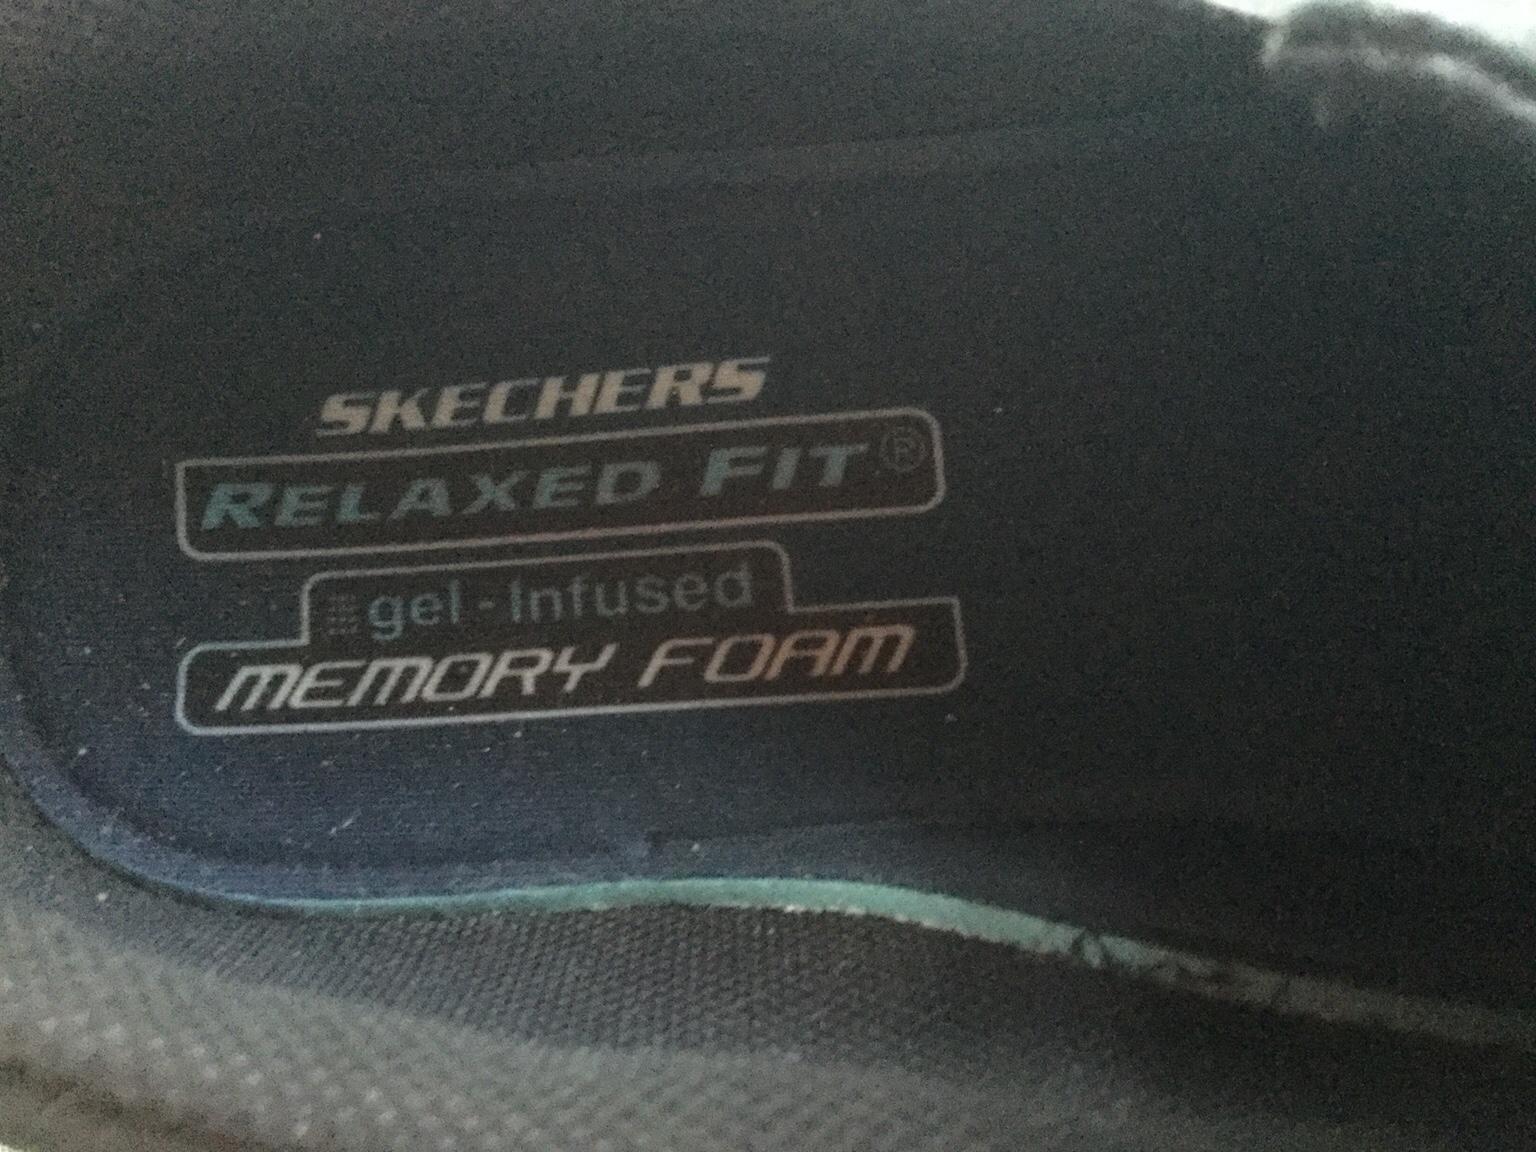 men's skechers relaxed fit gel infused memory foam